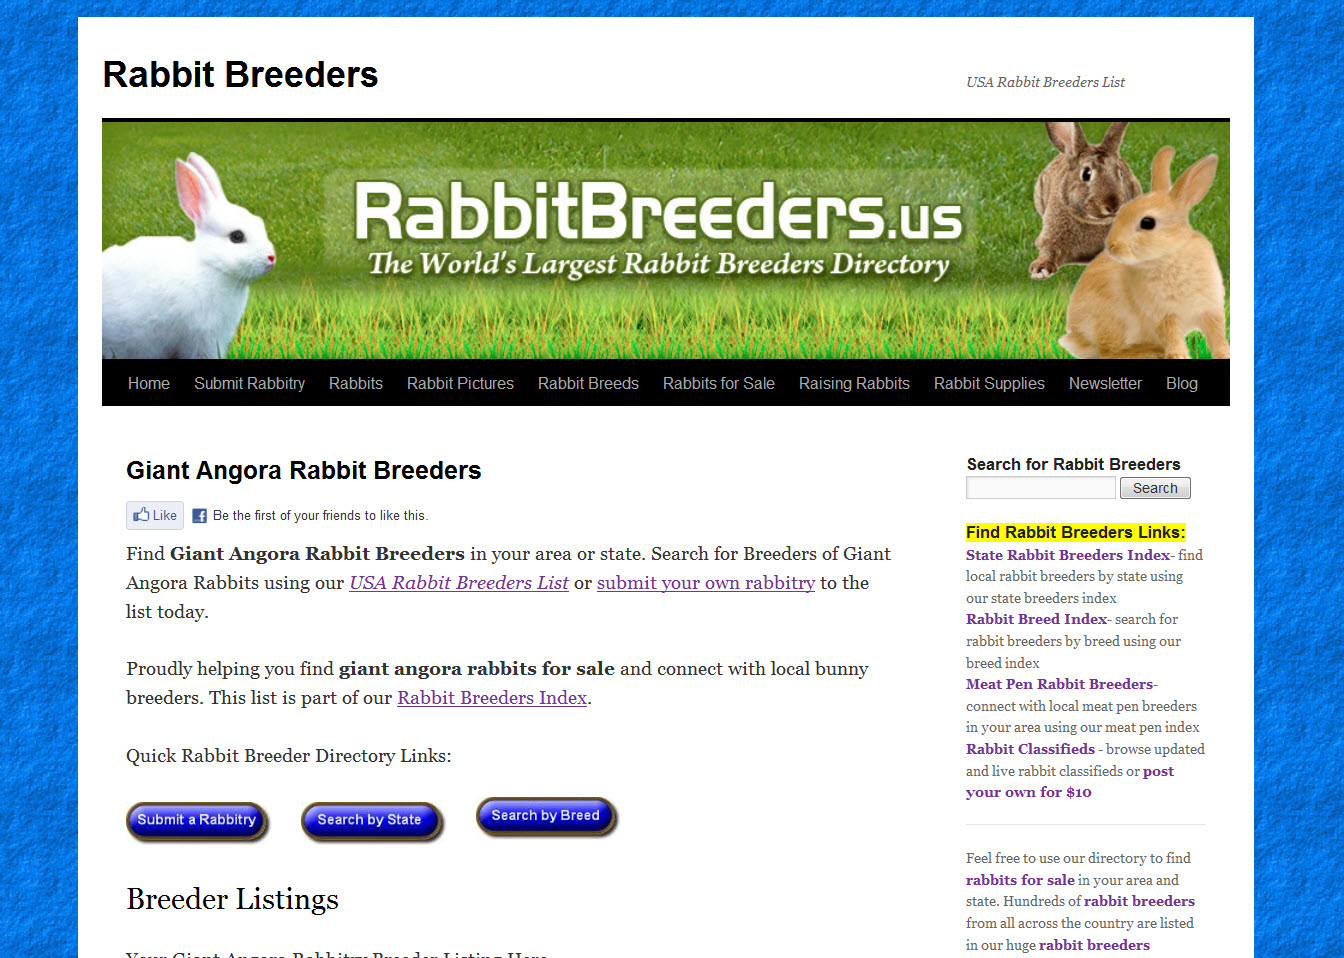 Giant Angora Rabbit Breeders